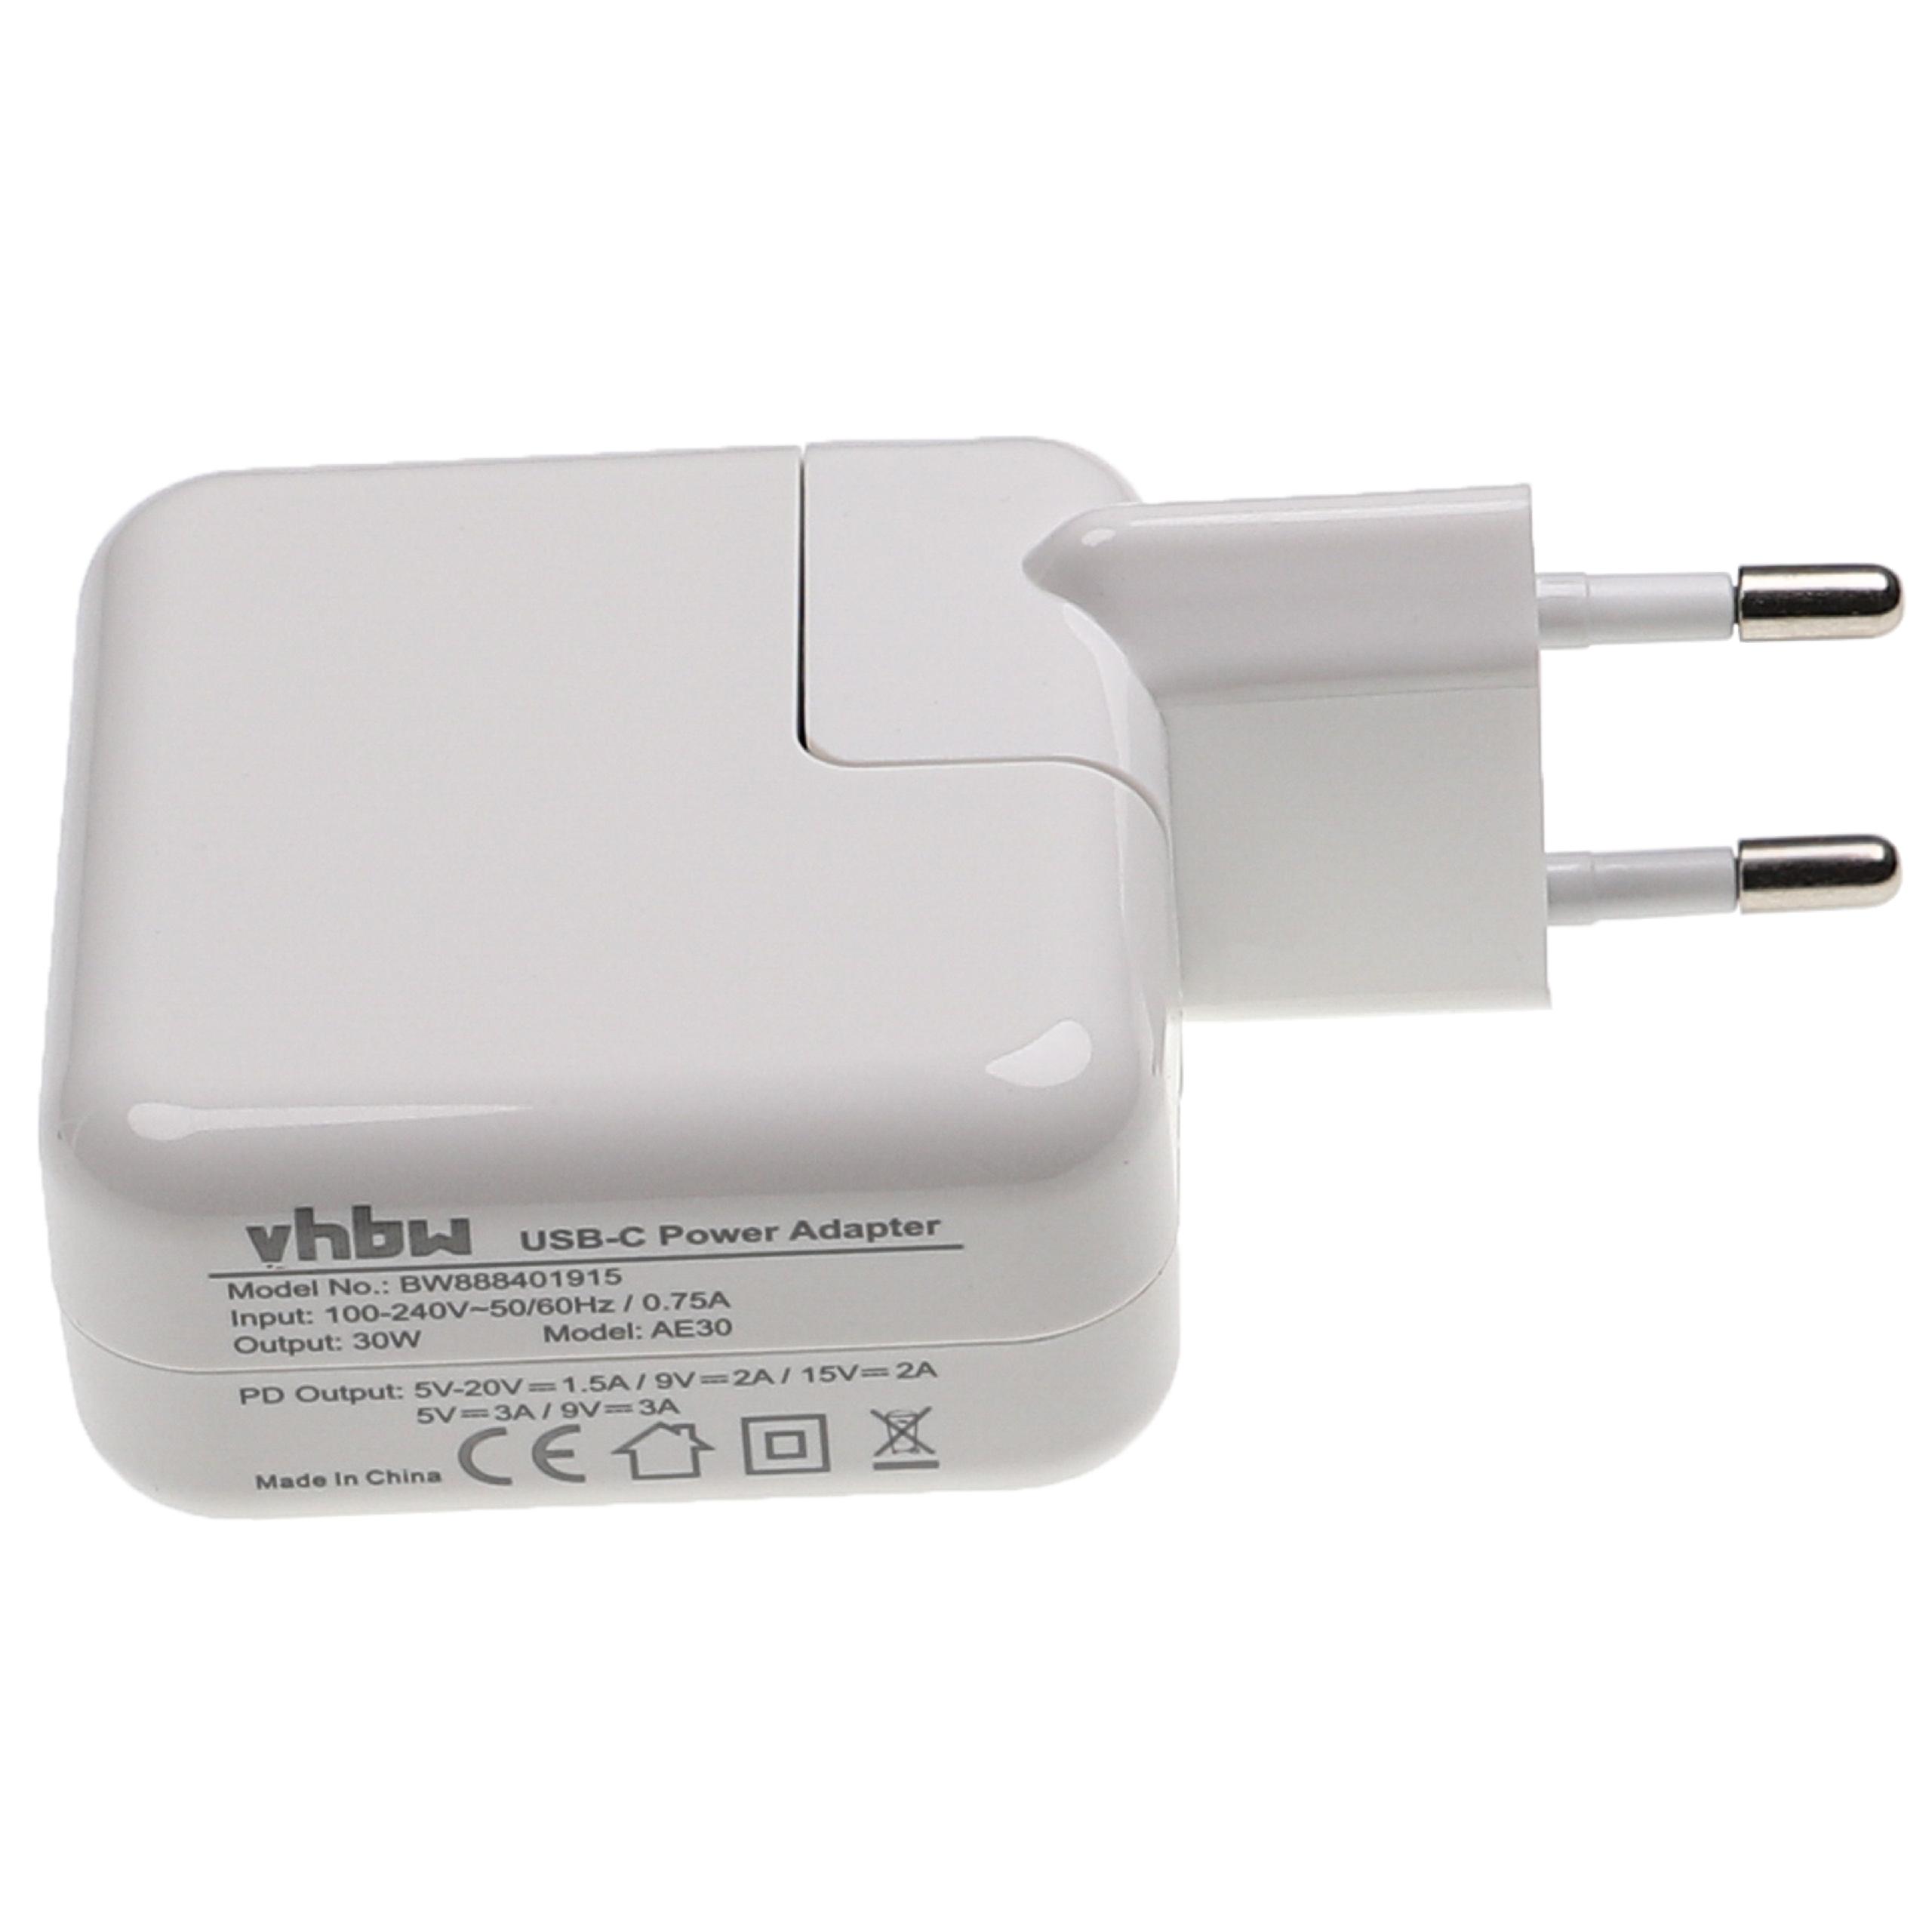 Adaptador USB C para smartphones, móviles, tablets - Cargador USB, adaptador15 / 9 / 5 V